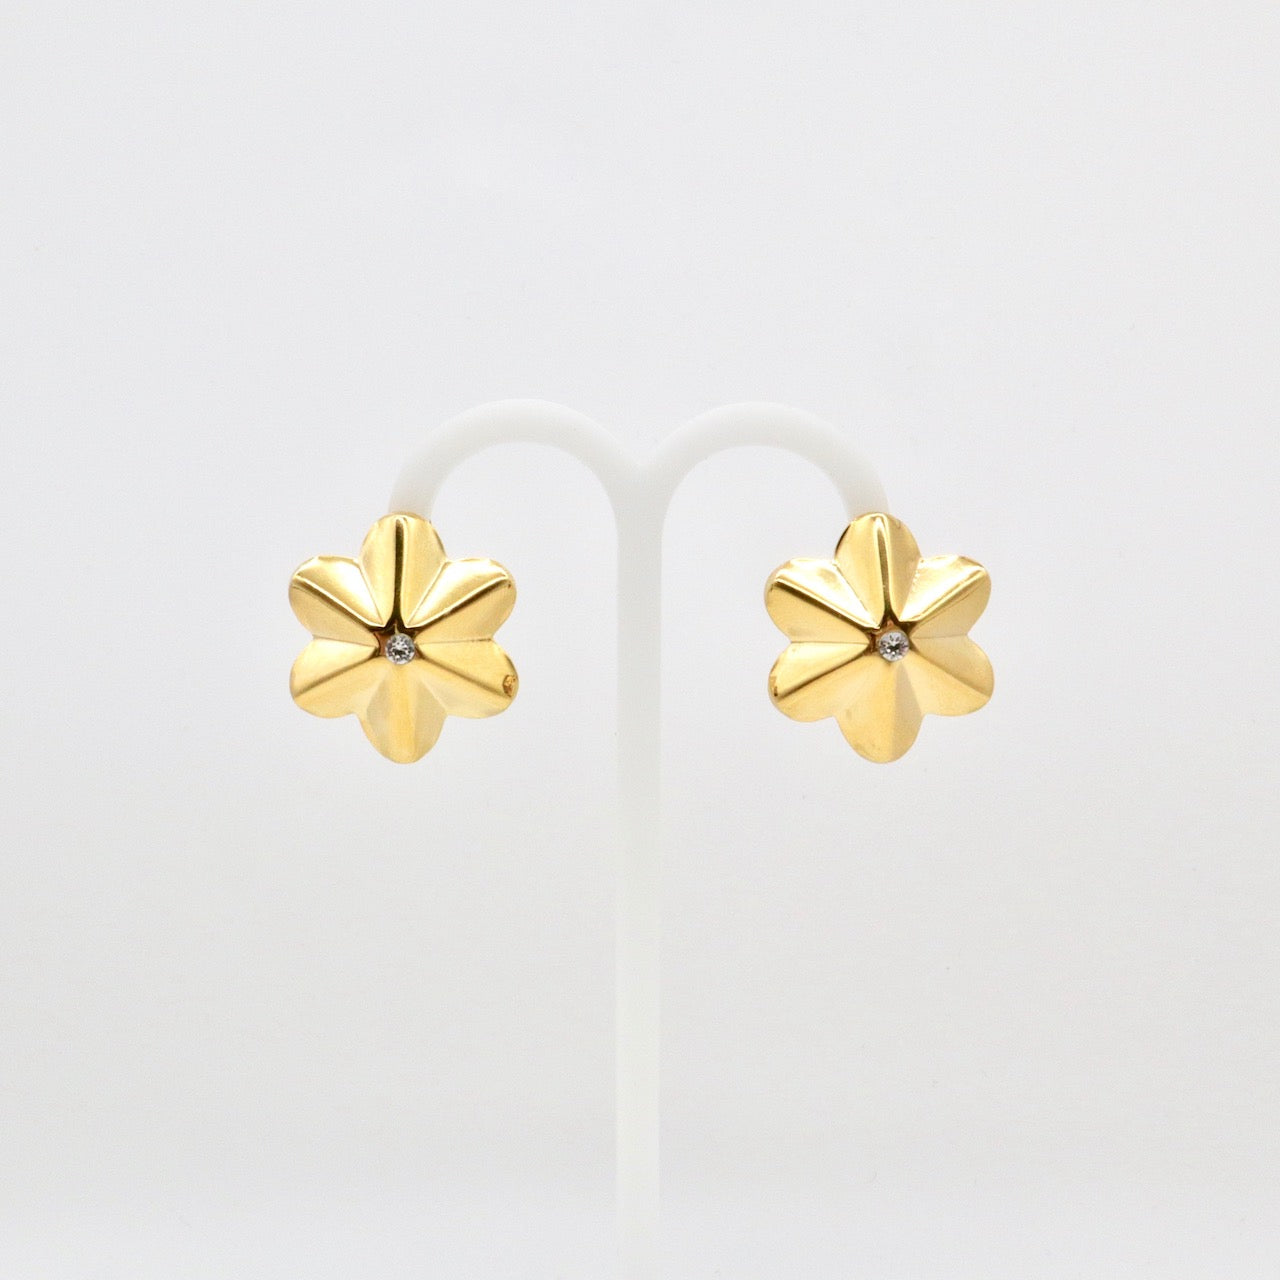 【Les Balanes】Single Pierced Earrings